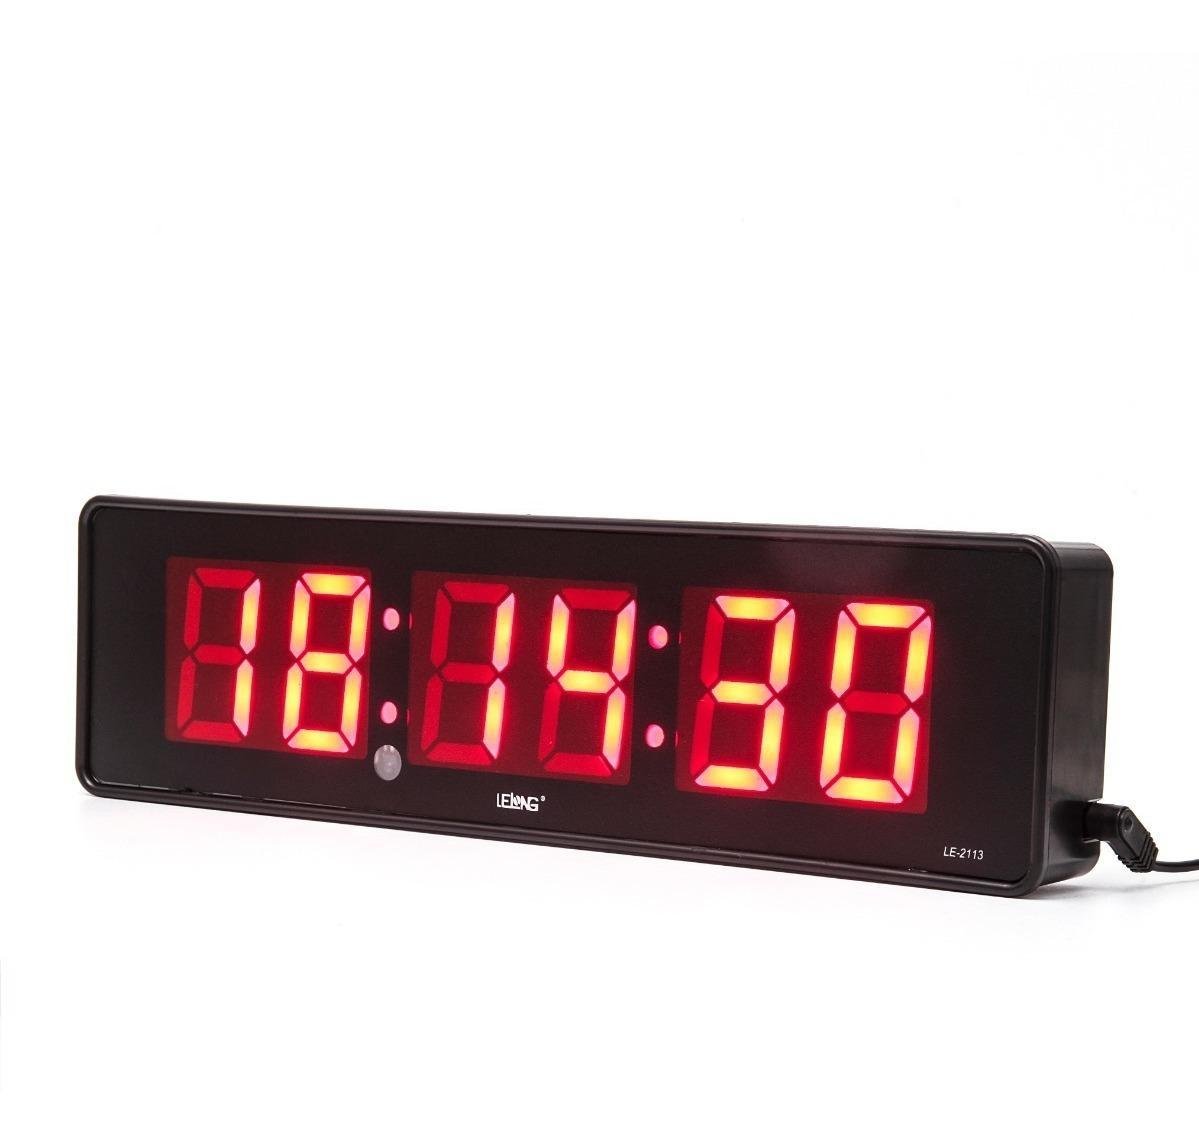 Cronometro Relógio Led Digital Parede Mesa com Controle 2113